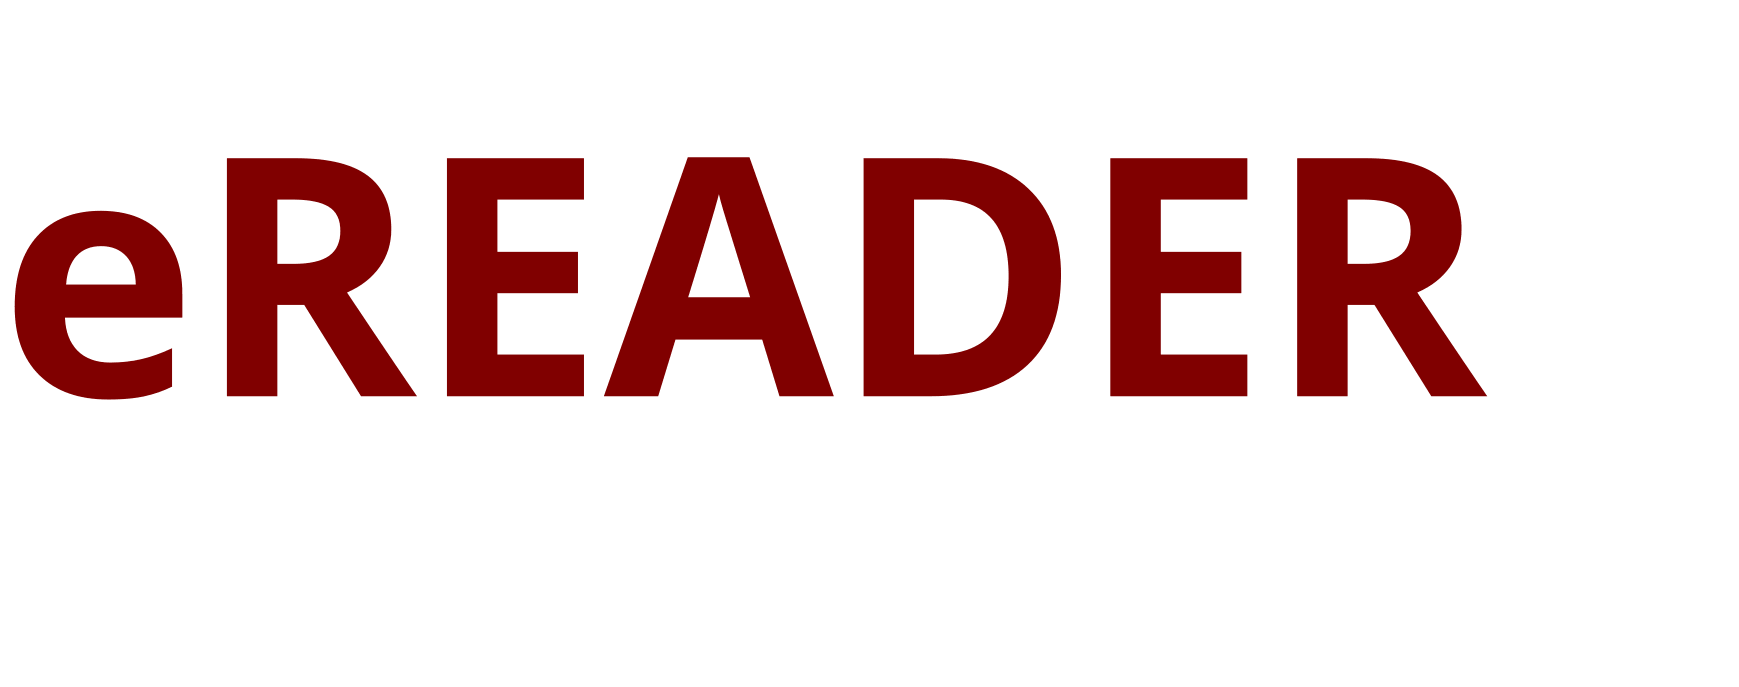 eReader - The eFORMz Document Viewer